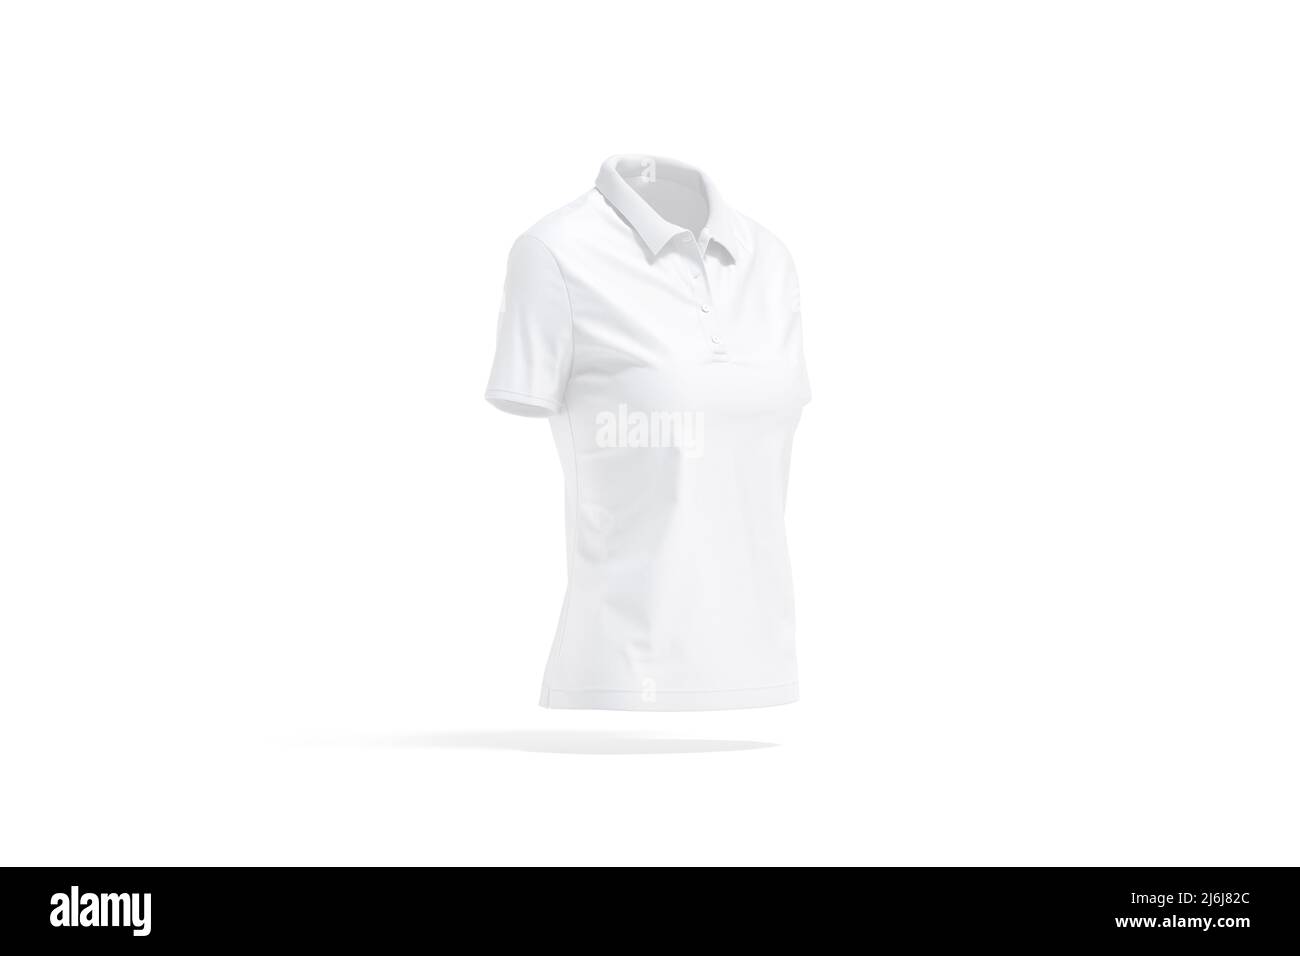 Camisa polo mujer 3d recortadas stock - Alamy